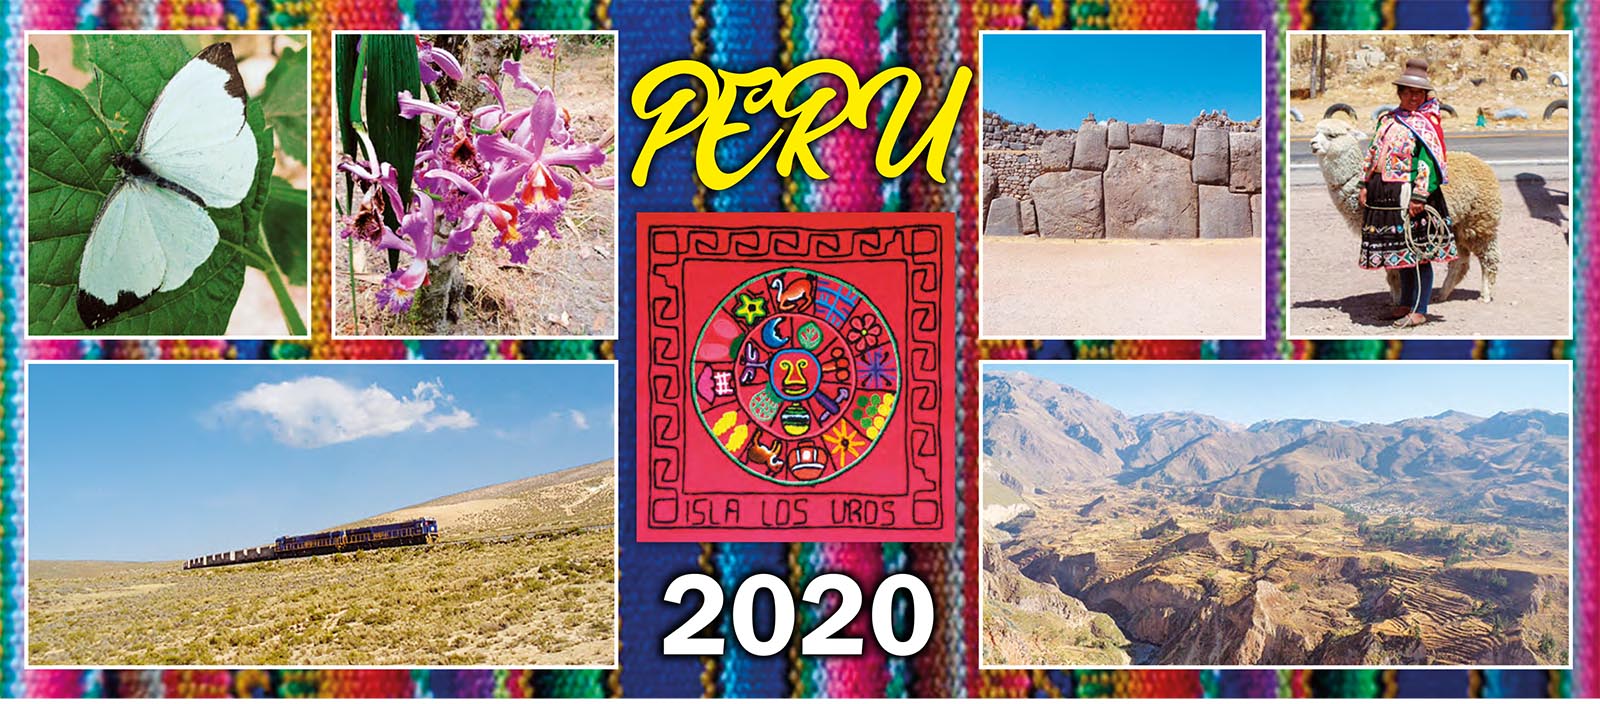 Peru 2020